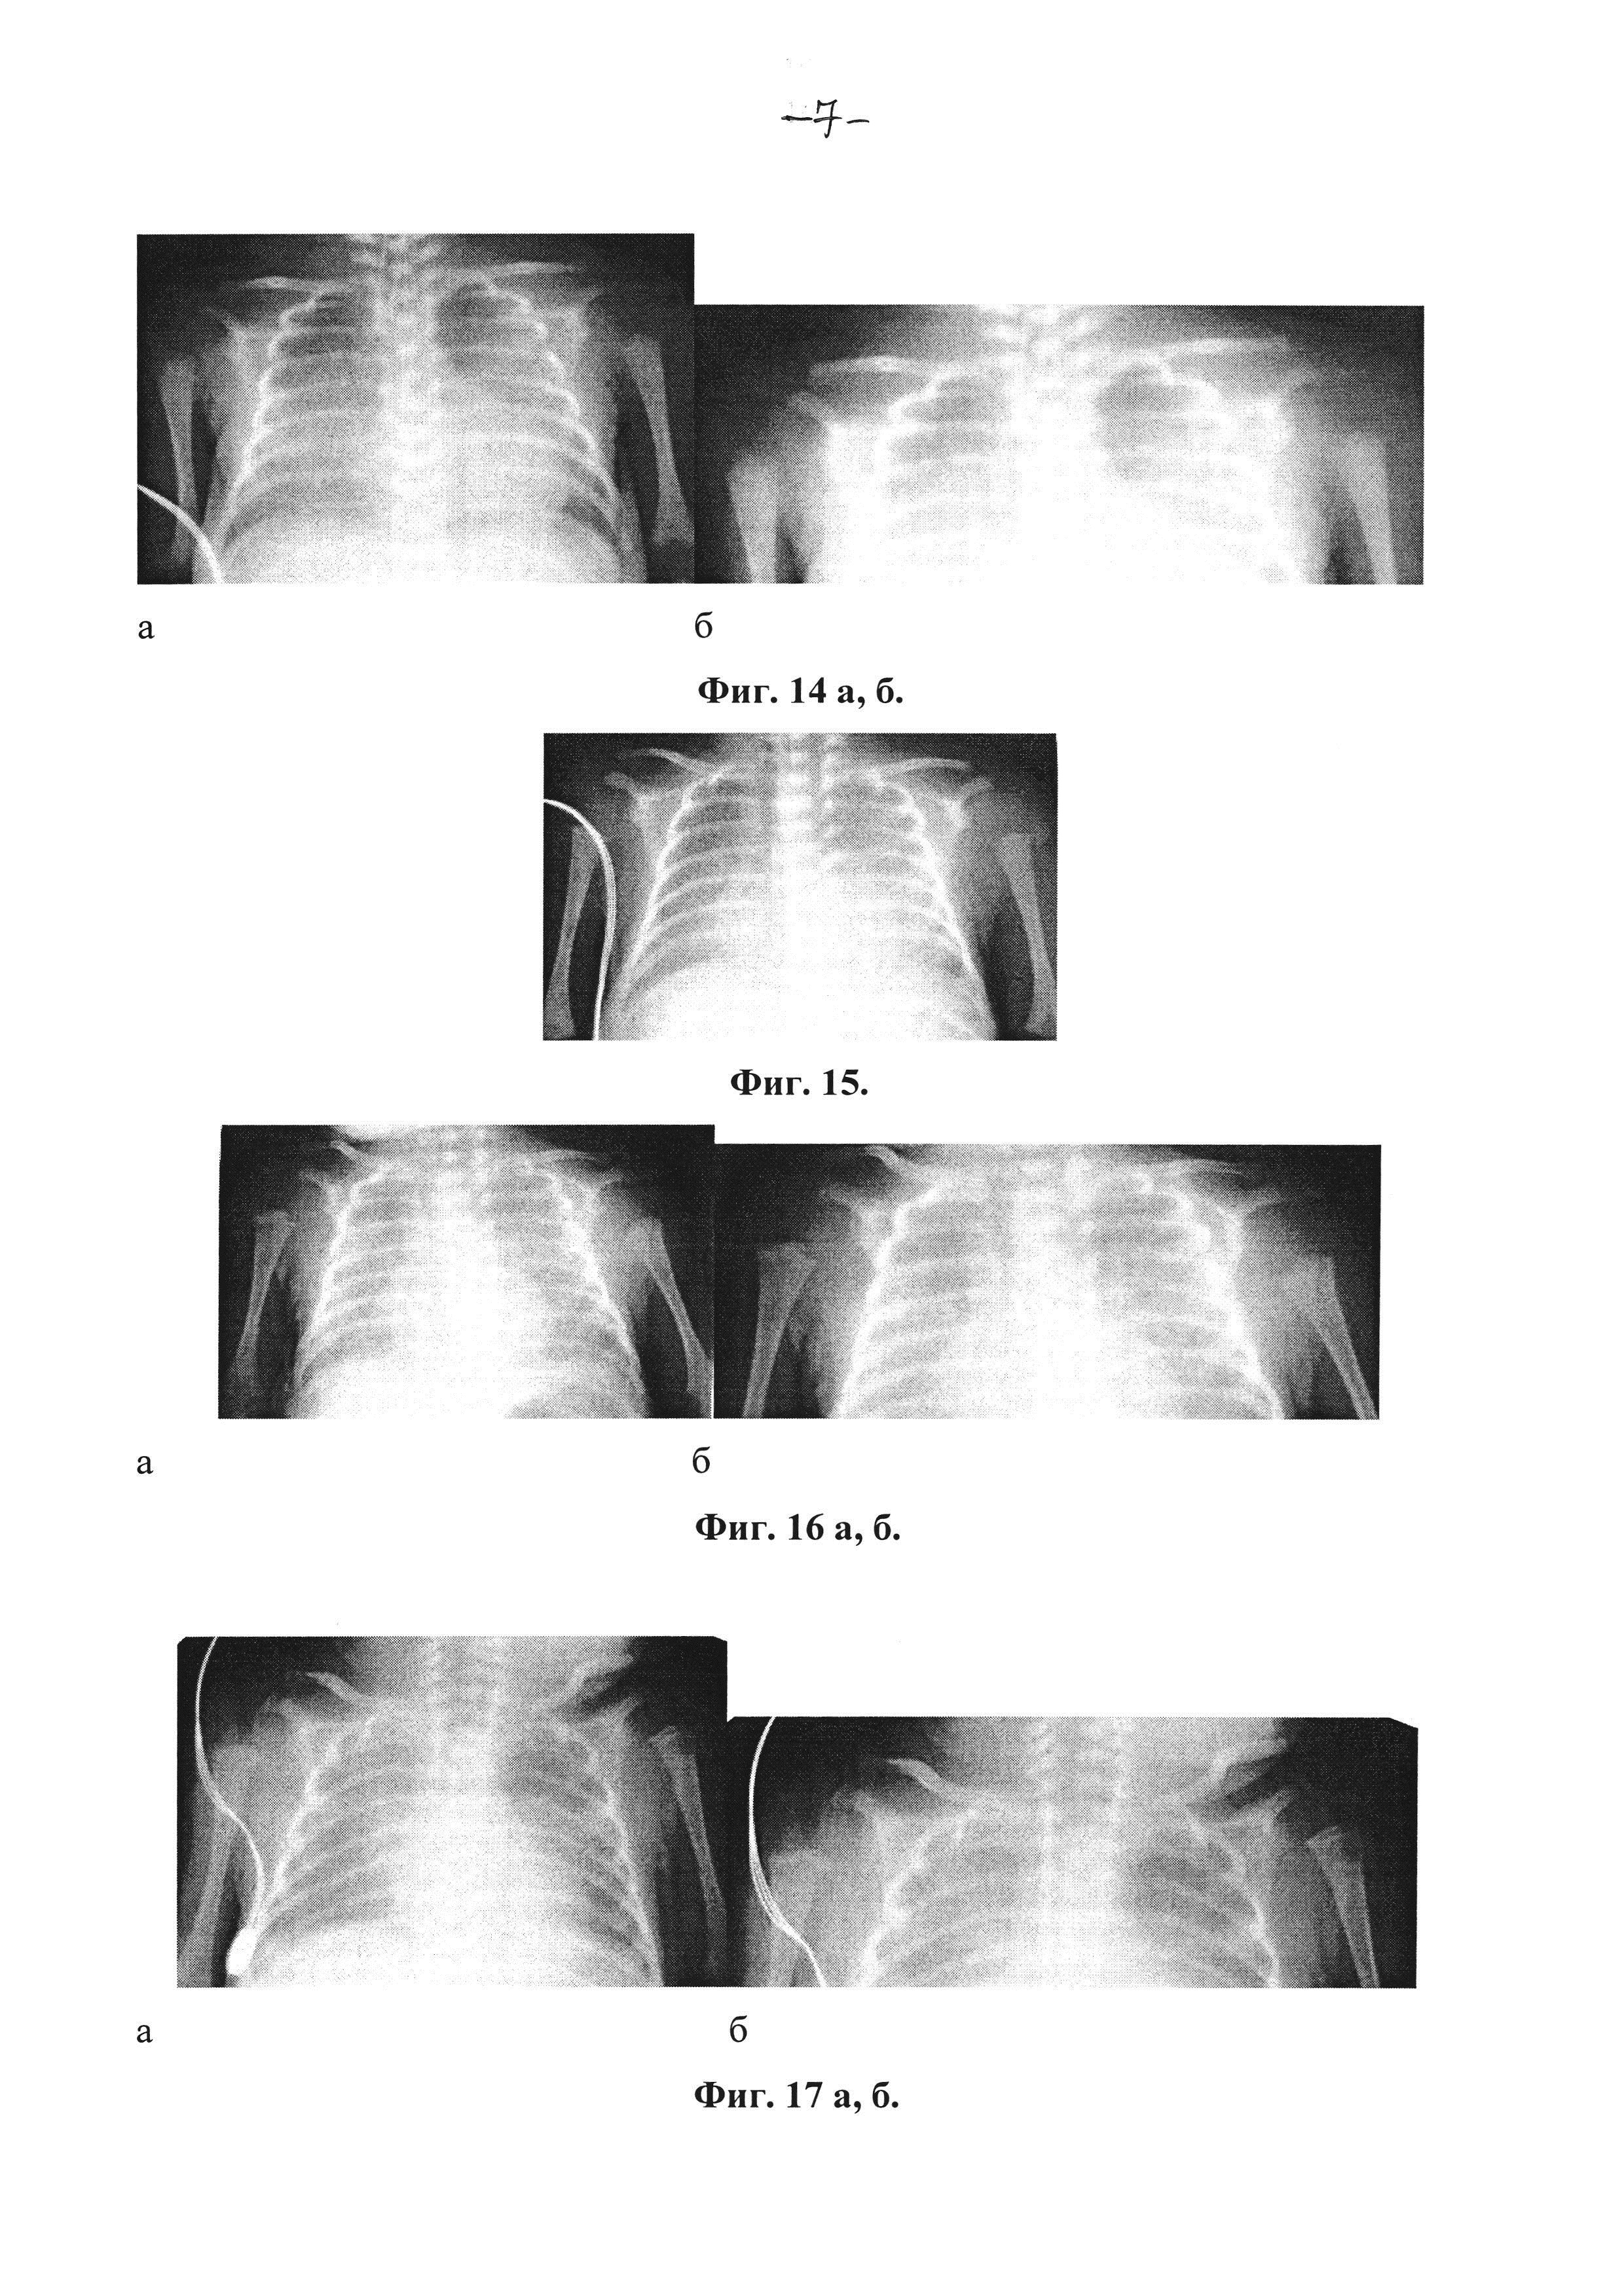 Способ рентгенологической диагностики остеопении (метаболической болезни костей) и раннего рахита у недоношенных детей